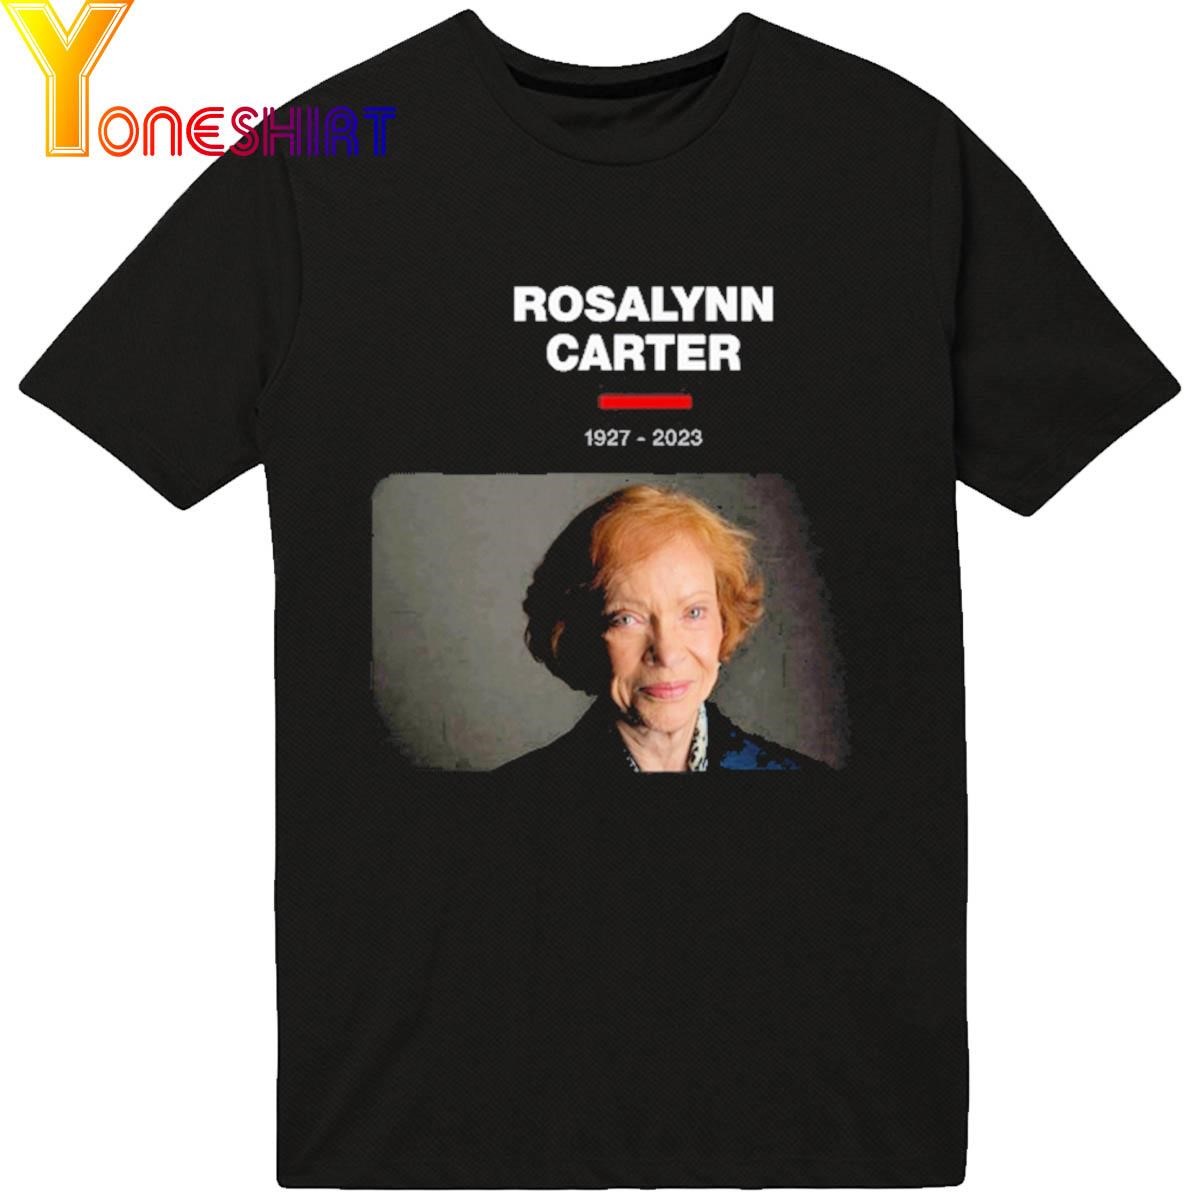 Rosalynn Carter 1927-2023 shirt